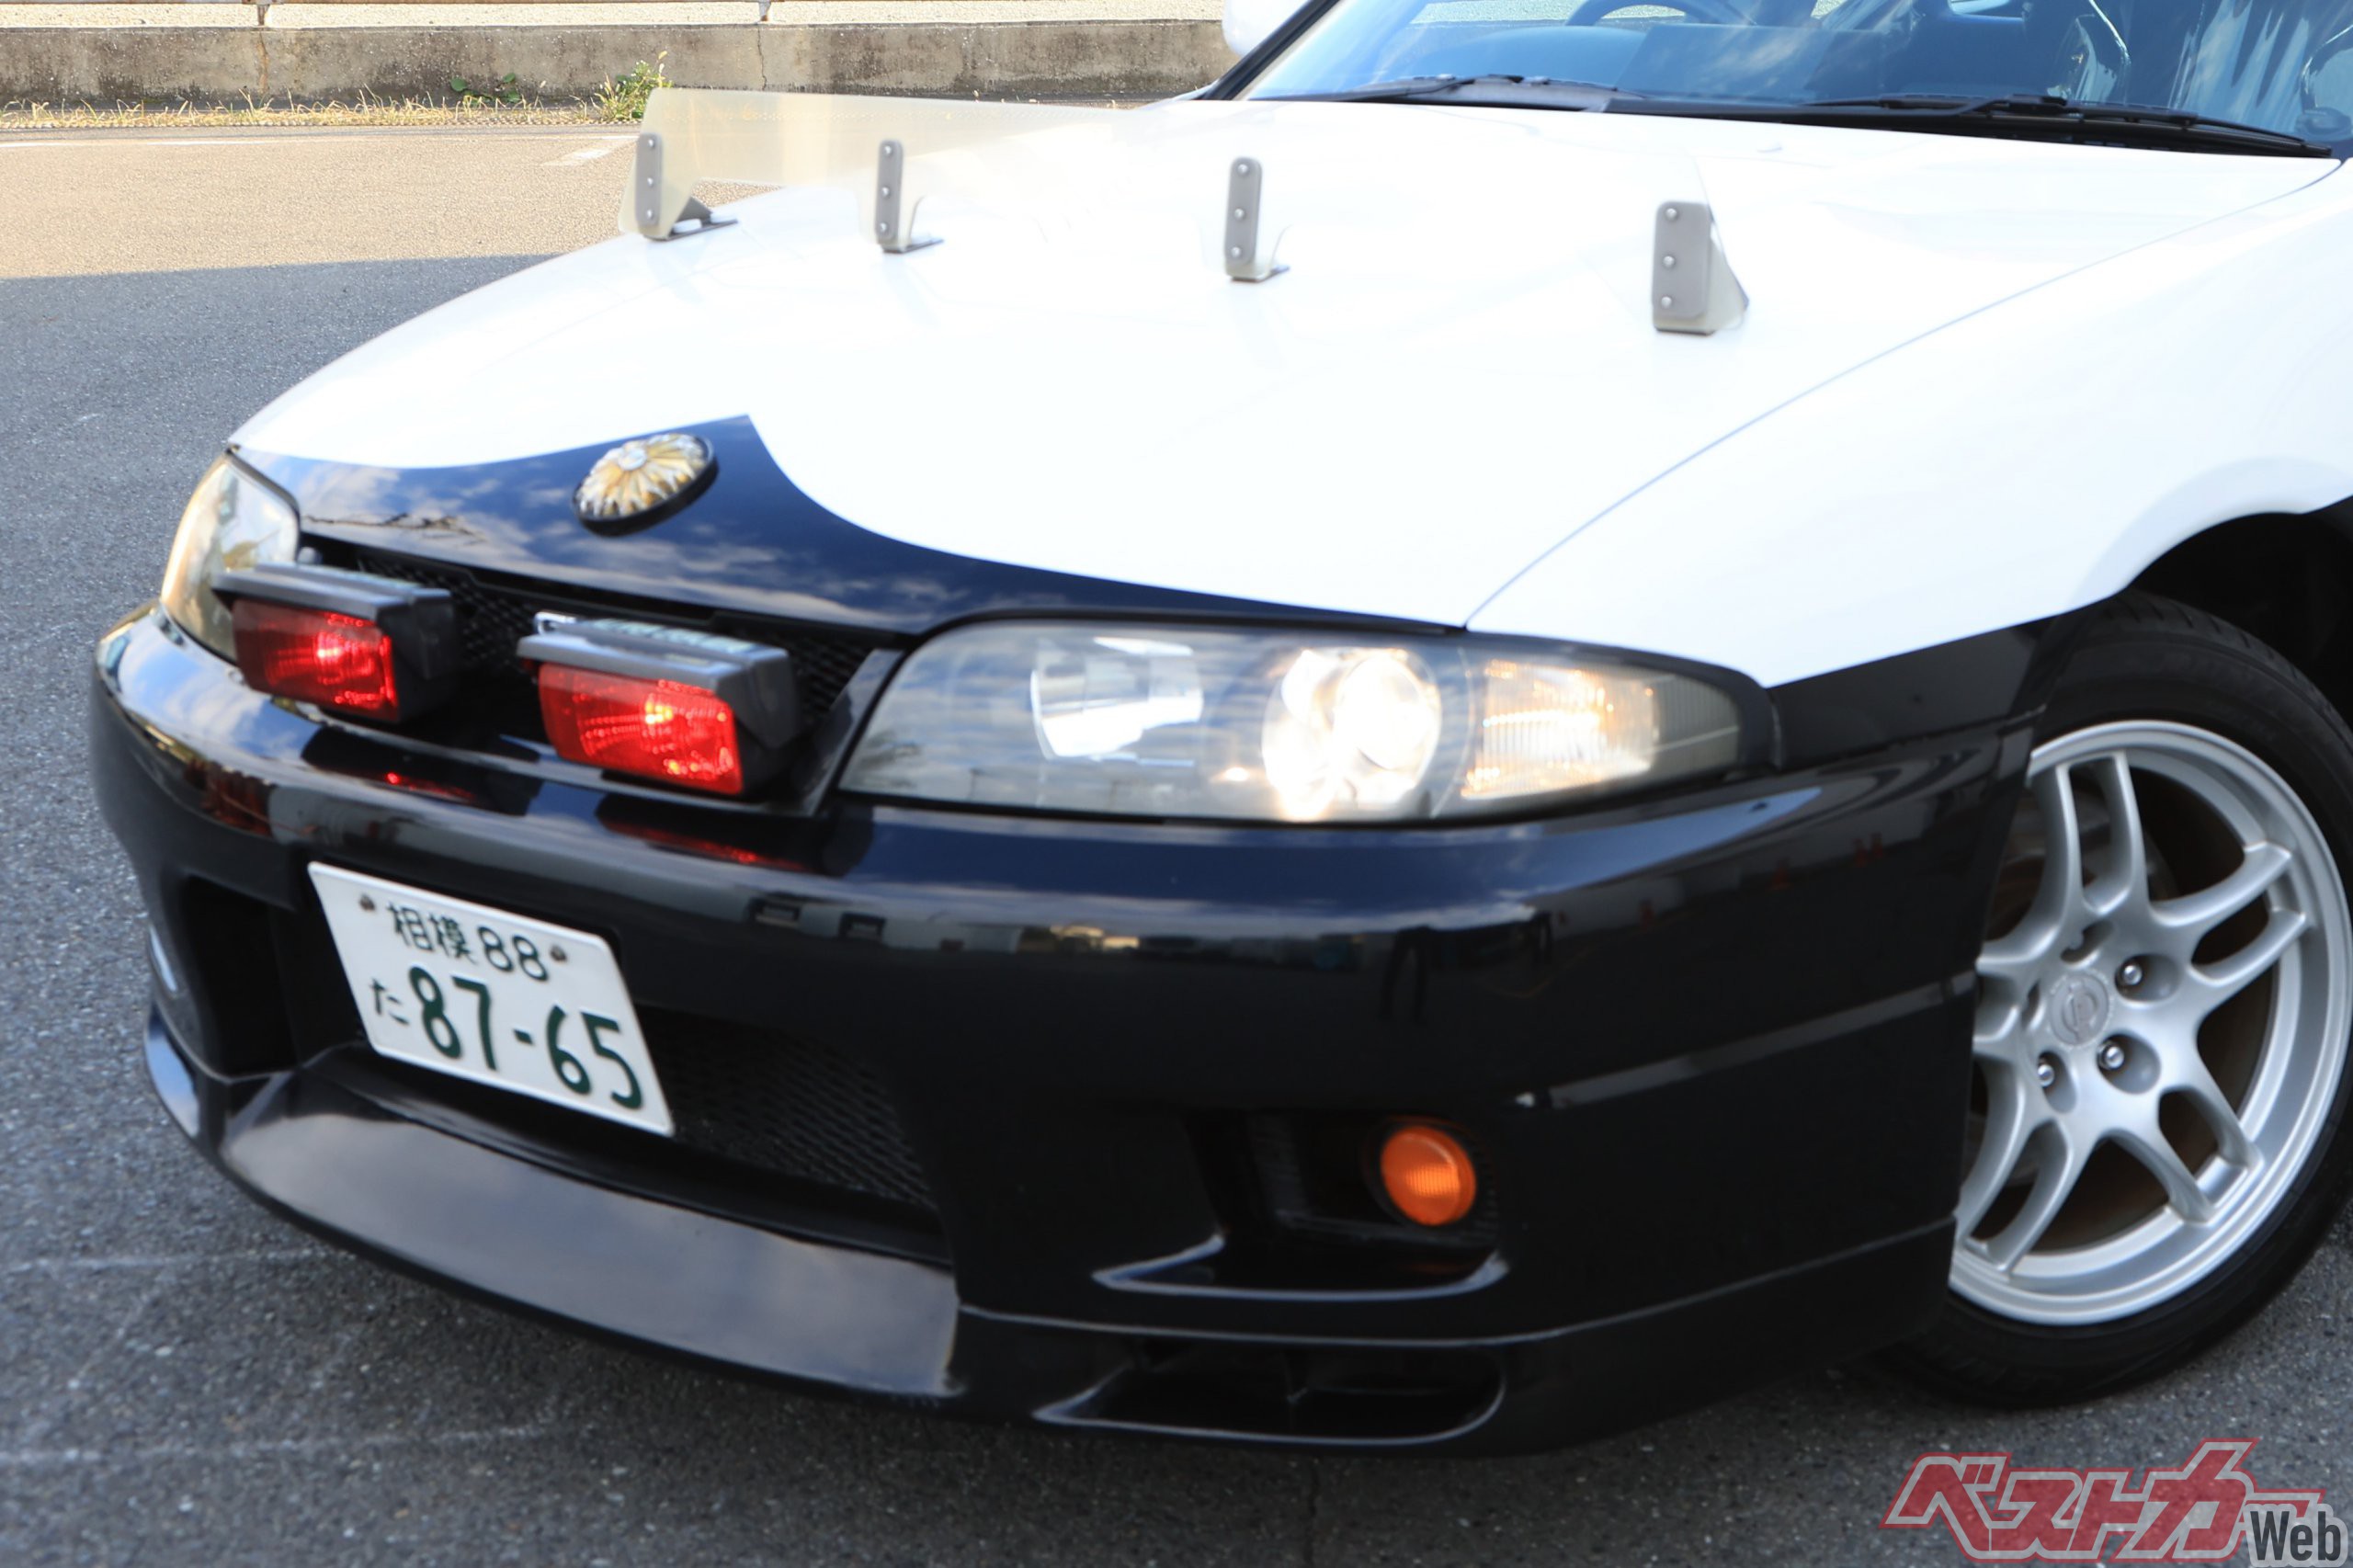 R33スカイライン4ドアGT-Rパトカー仕様も現役で活躍!! 神奈川県警白黒 